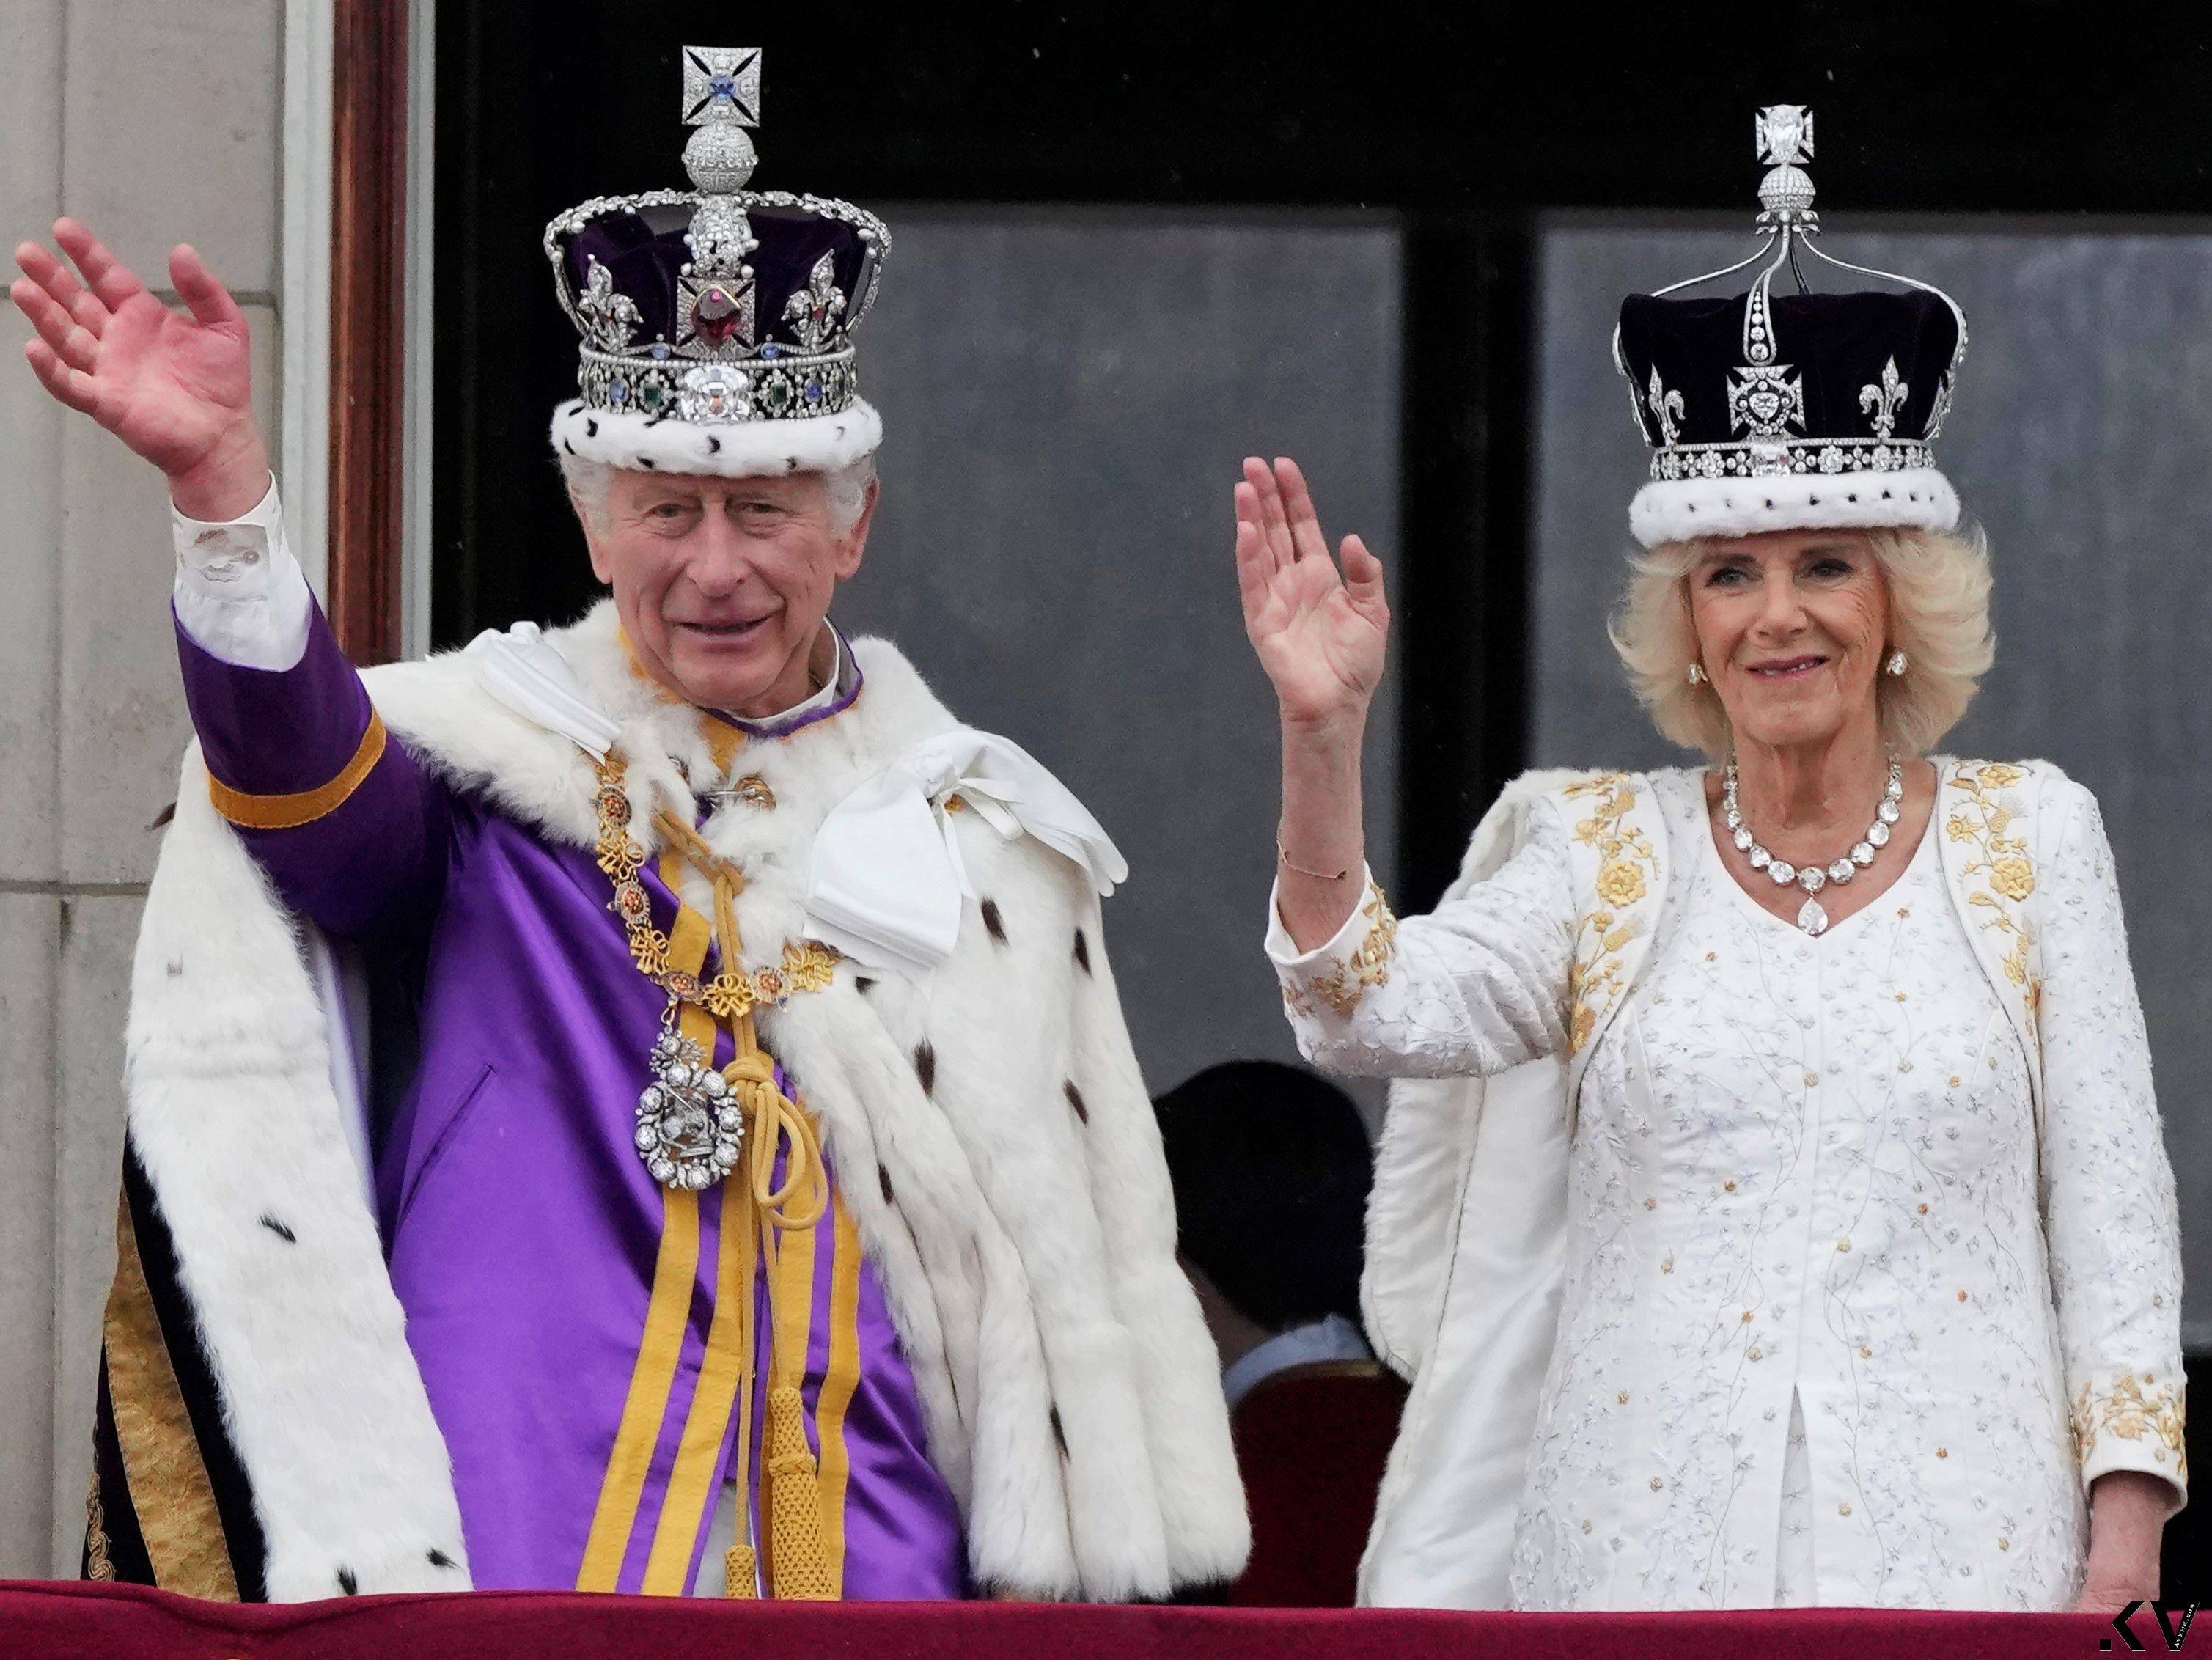 英国王加冕王冠一生只戴一次　礼成换戴闪耀317.4克拉巨钻冠冕 时尚穿搭 图1张